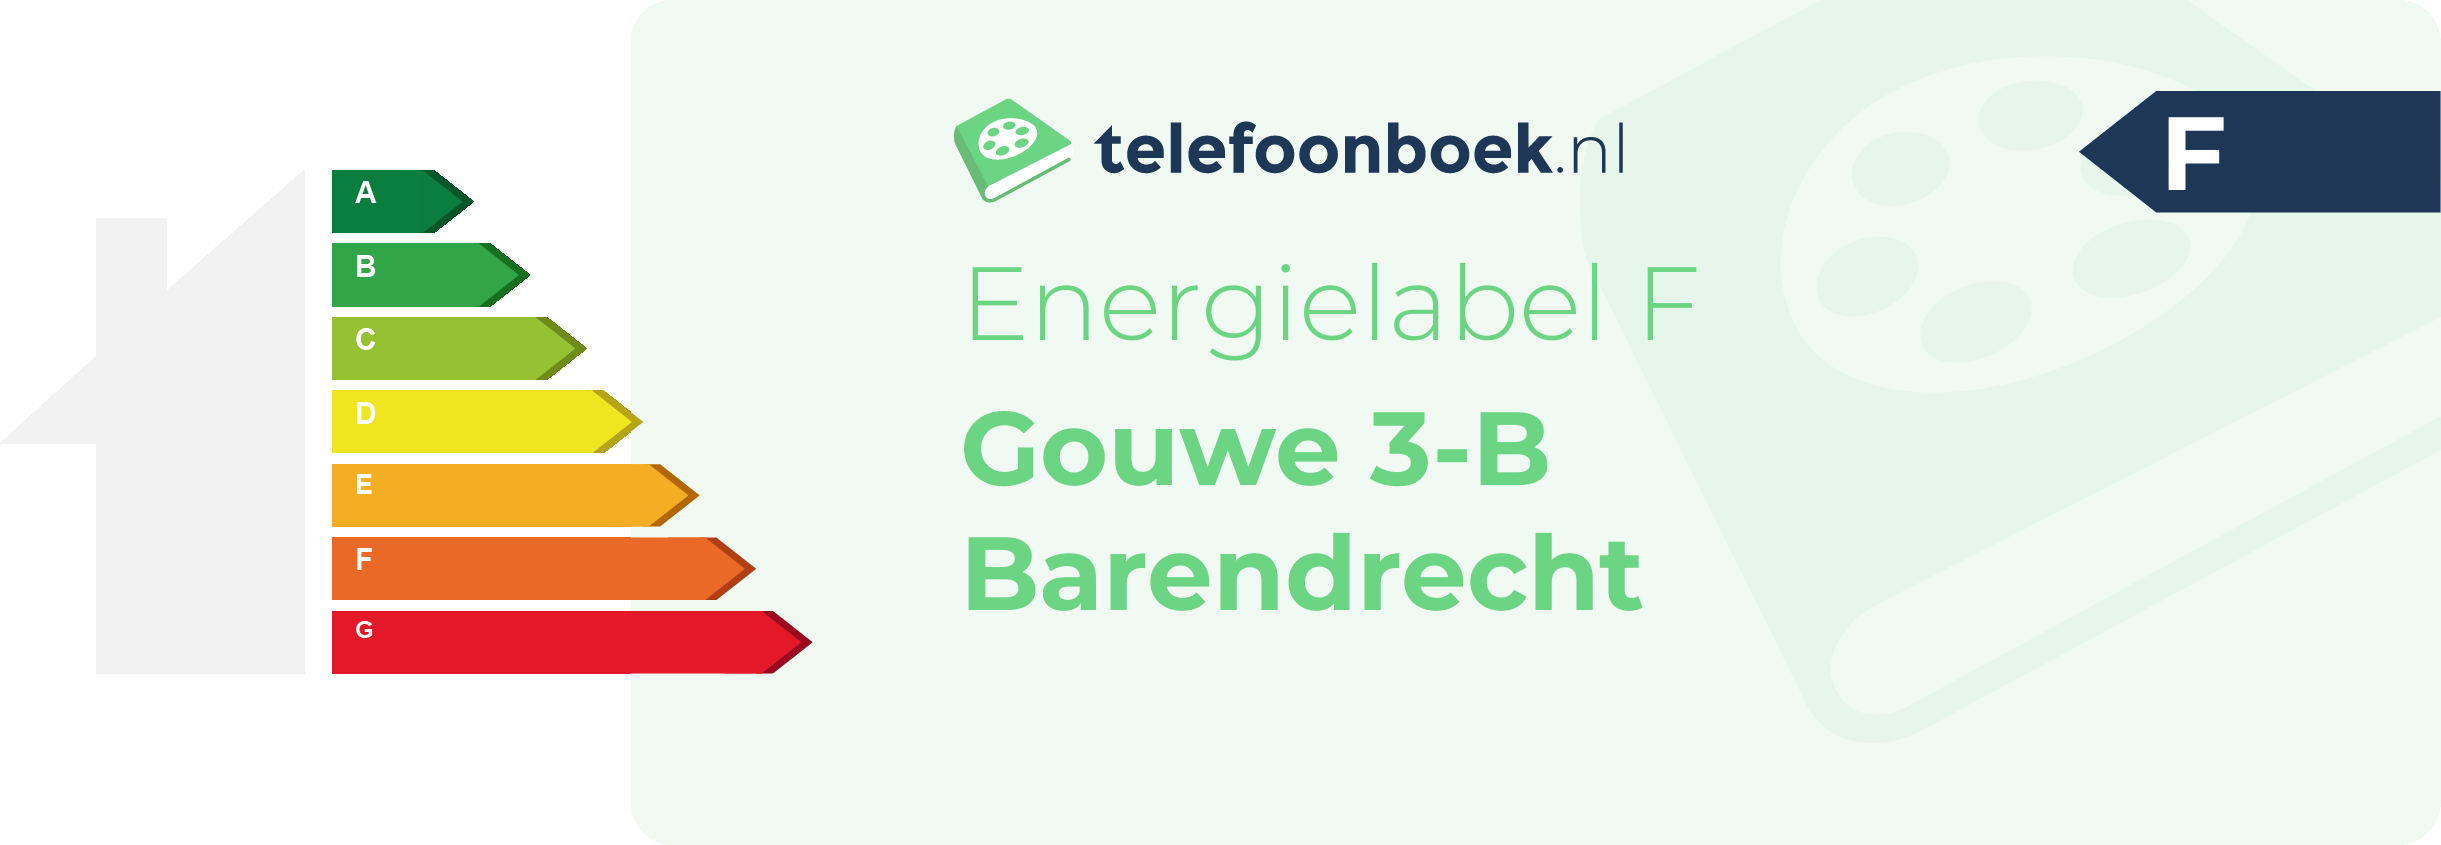 Energielabel Gouwe 3-B Barendrecht